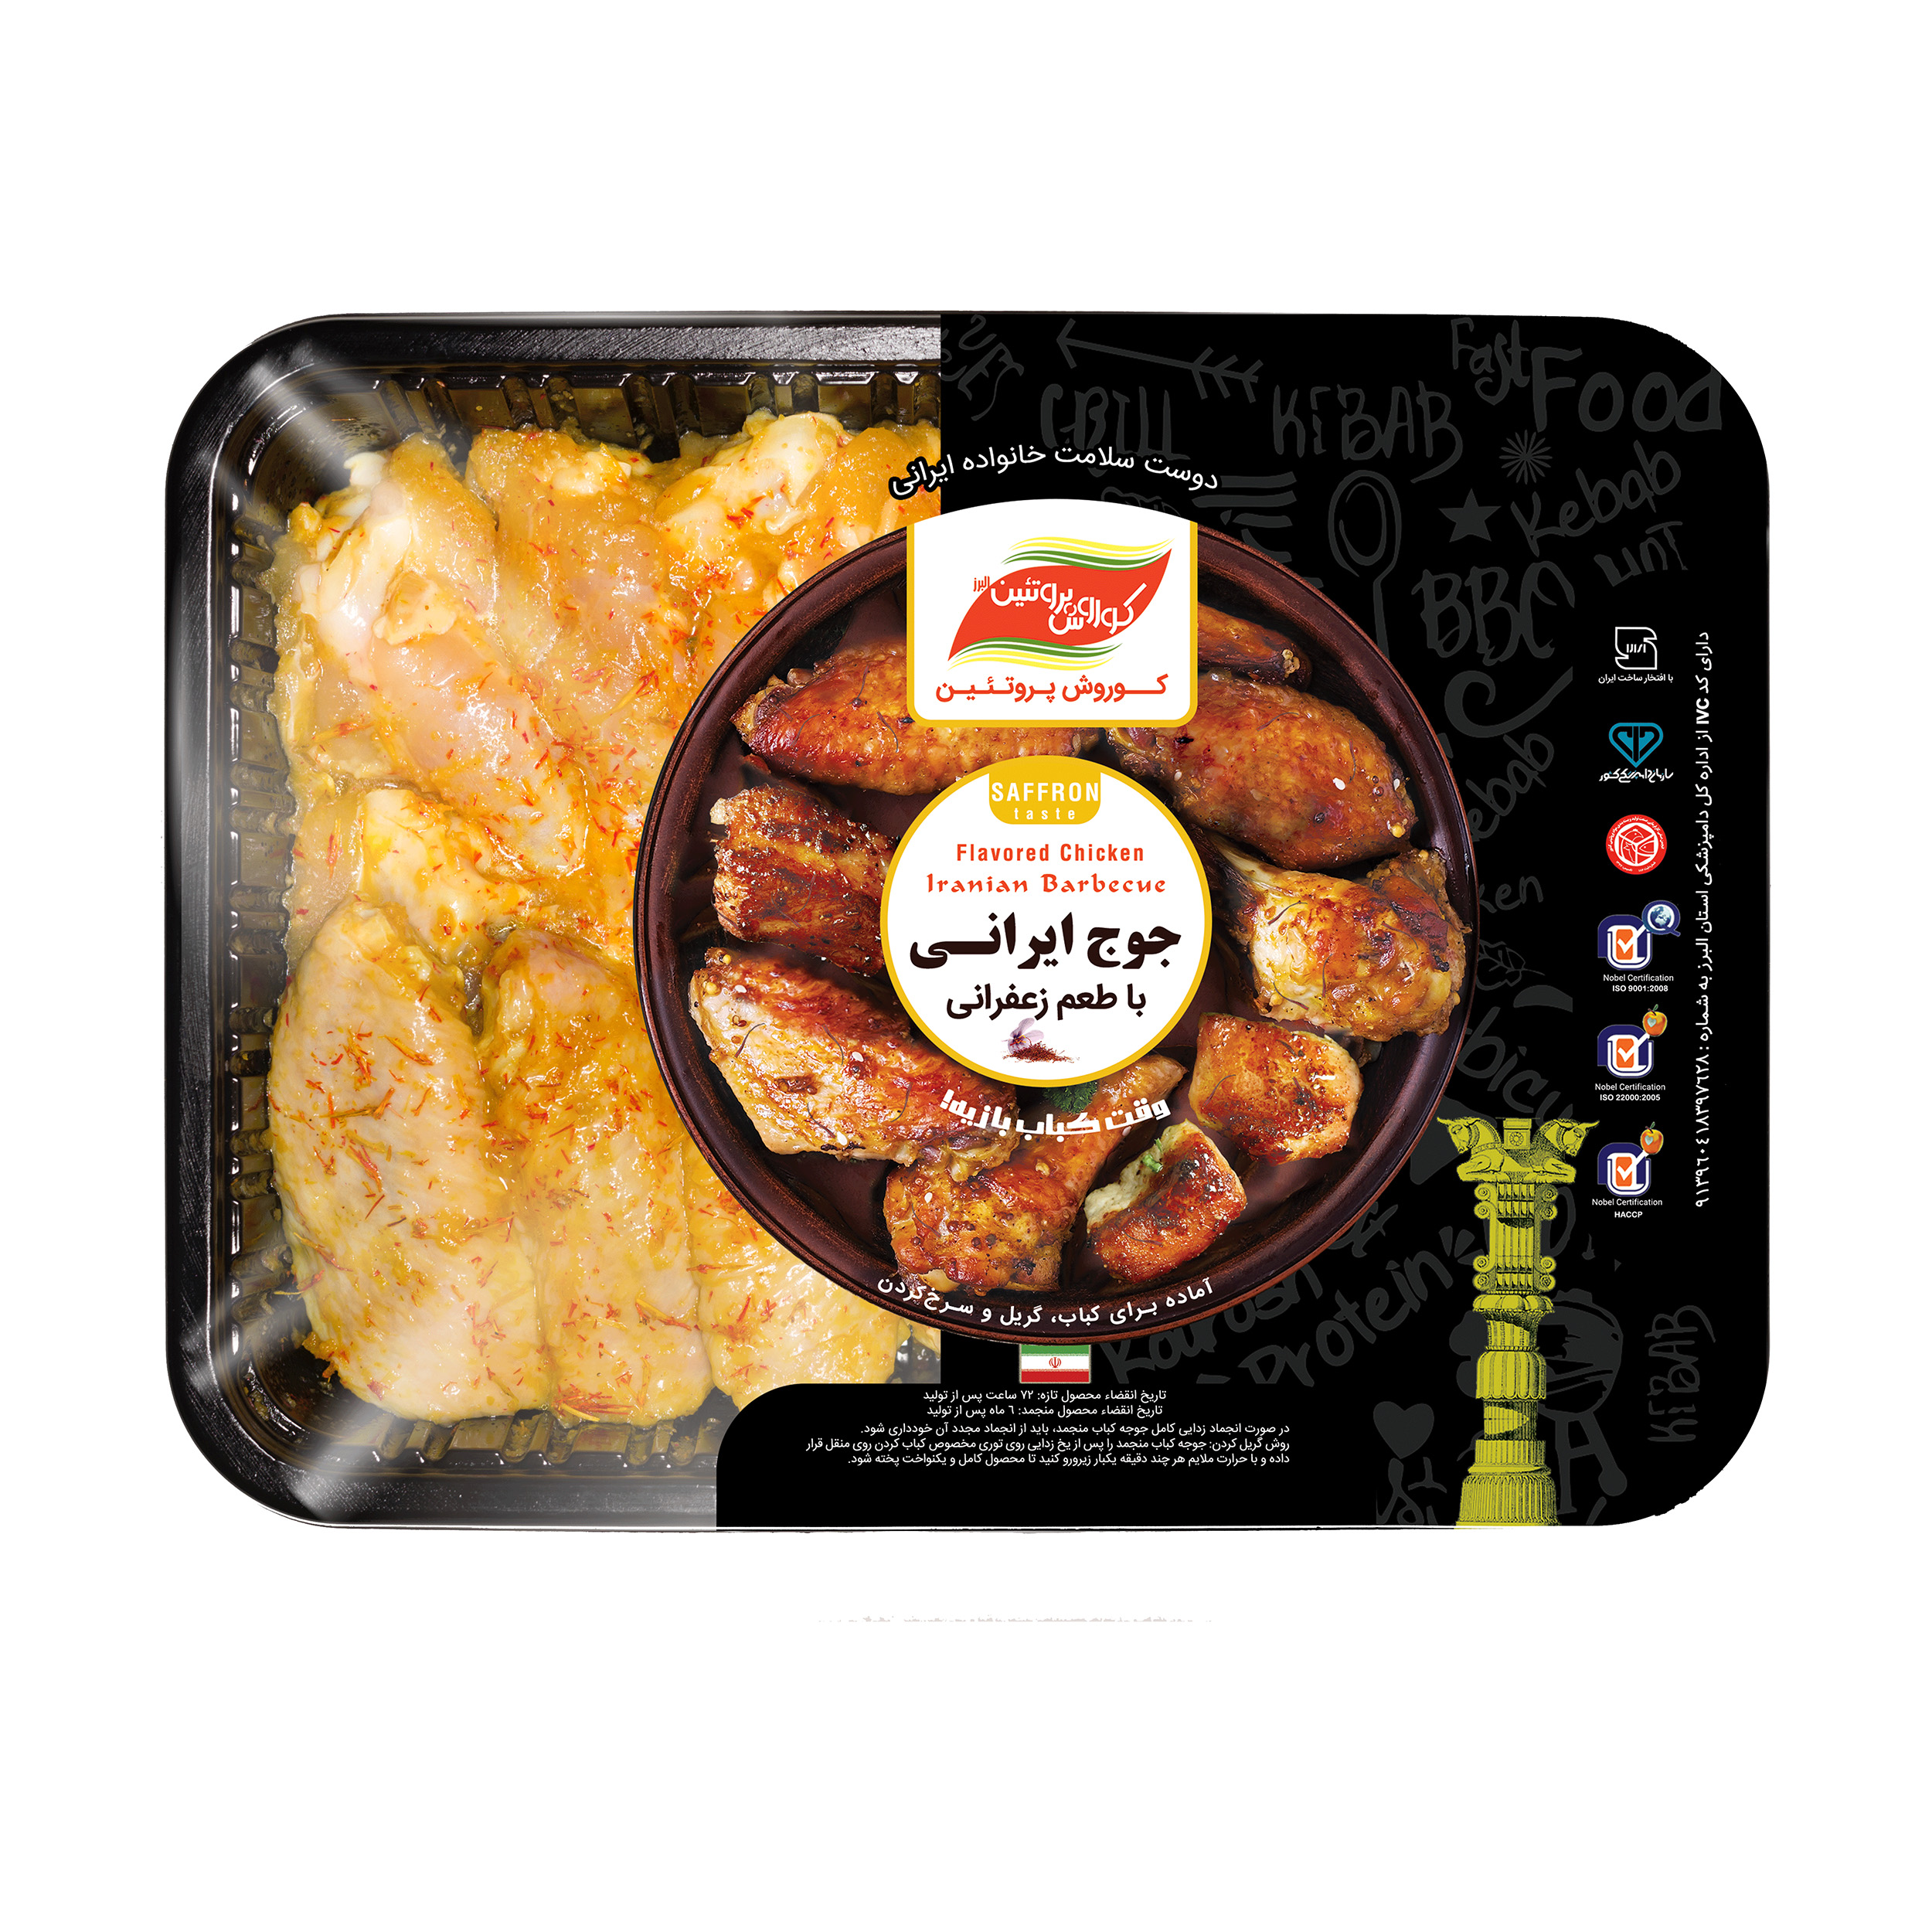 بال و بازو کبابی مرغ کوروش پروتئین با طعم زعفرانی ایرانی مقدار 800 گرم